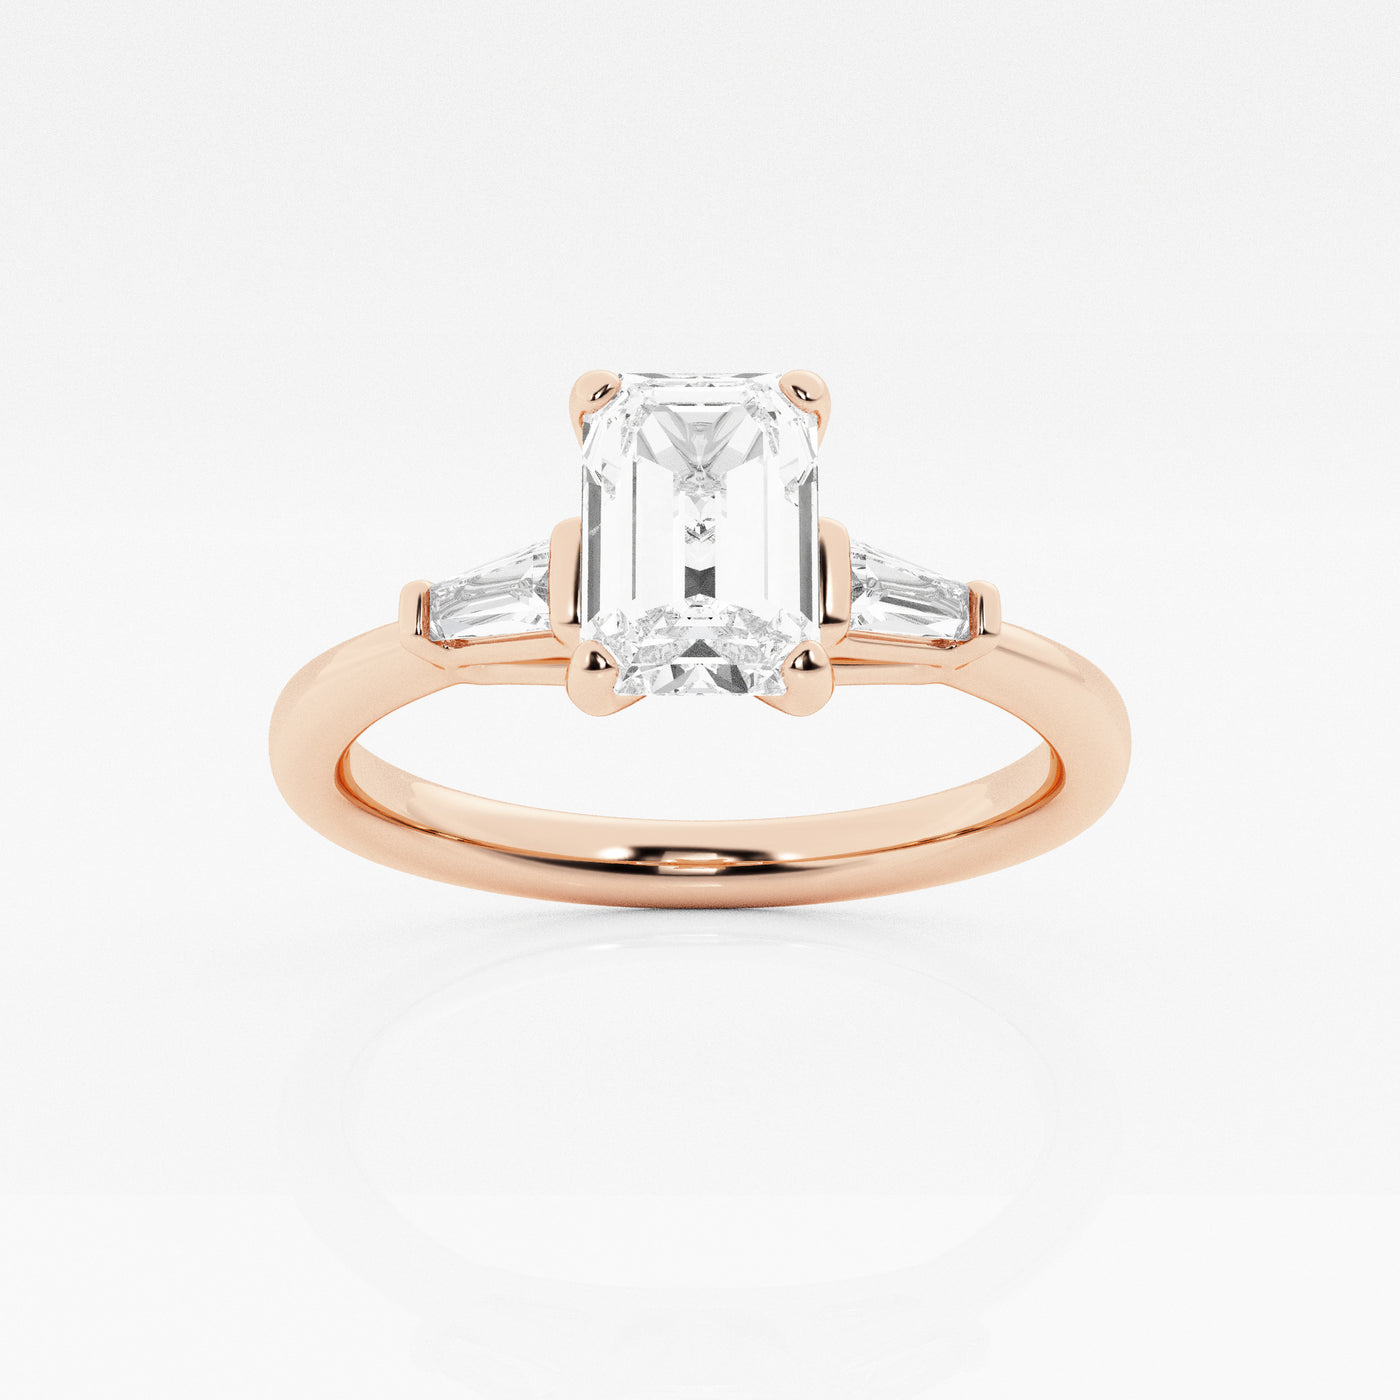 _main_image@SKU:LGR0617X2E100SOGS4~#carat_1.14#diamond-quality_fg,-vs2+#metal_18k-rose-gold